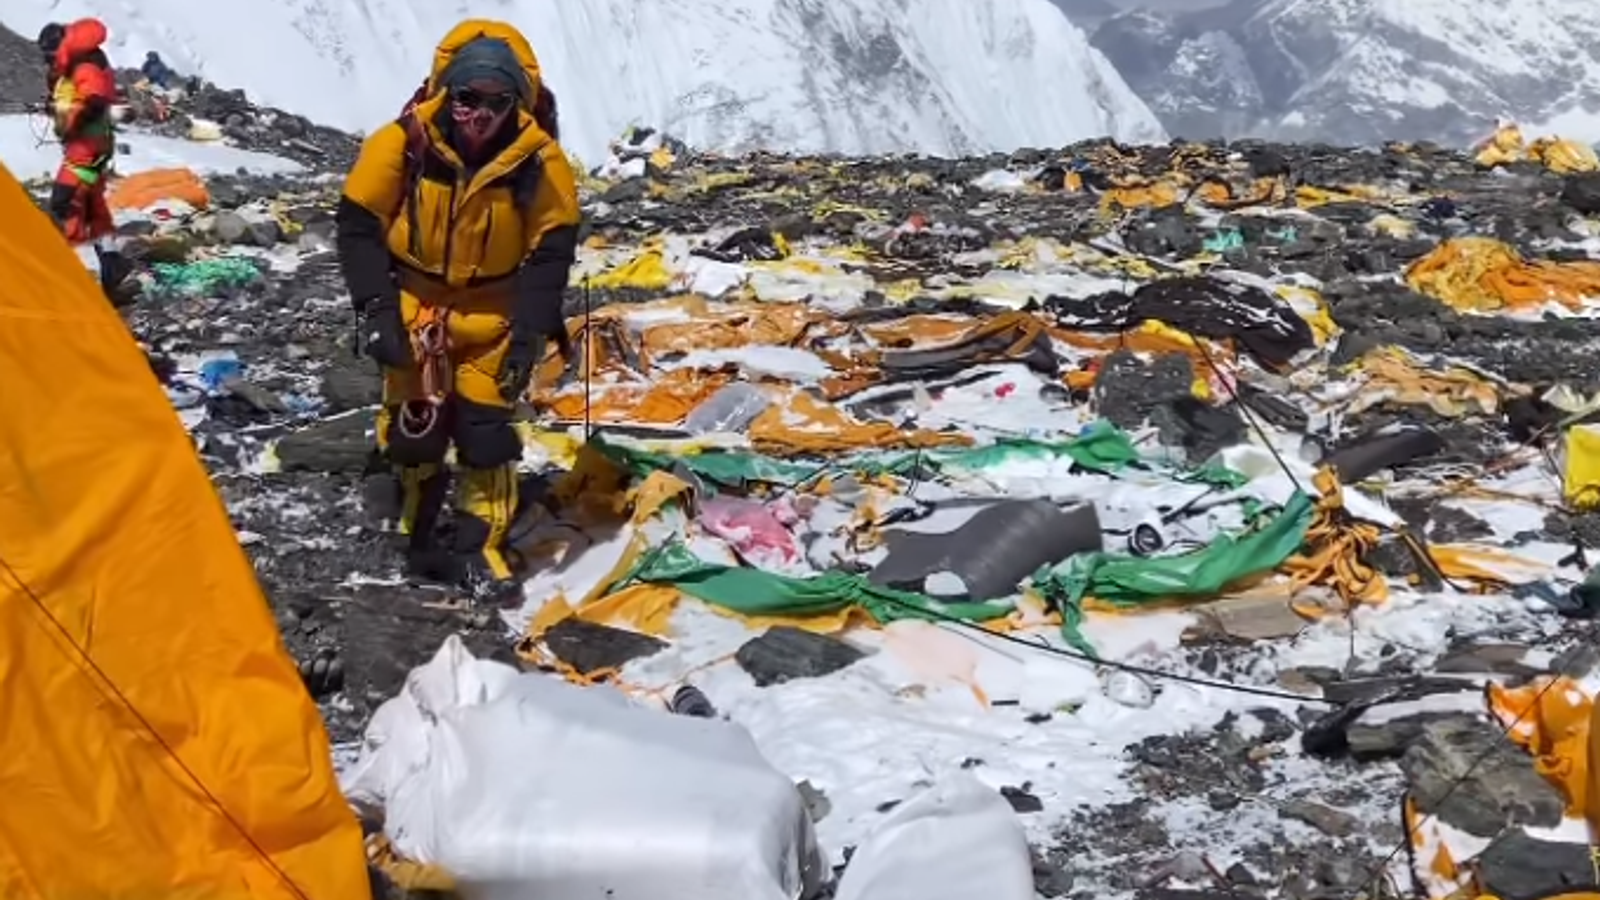 L’Himalaya è disseminato di spazzatura con “tende, ciotole d’acciaio, cucchiai e carta” tra gli oggetti lasciati dagli scalatori |  notizie dal mondo